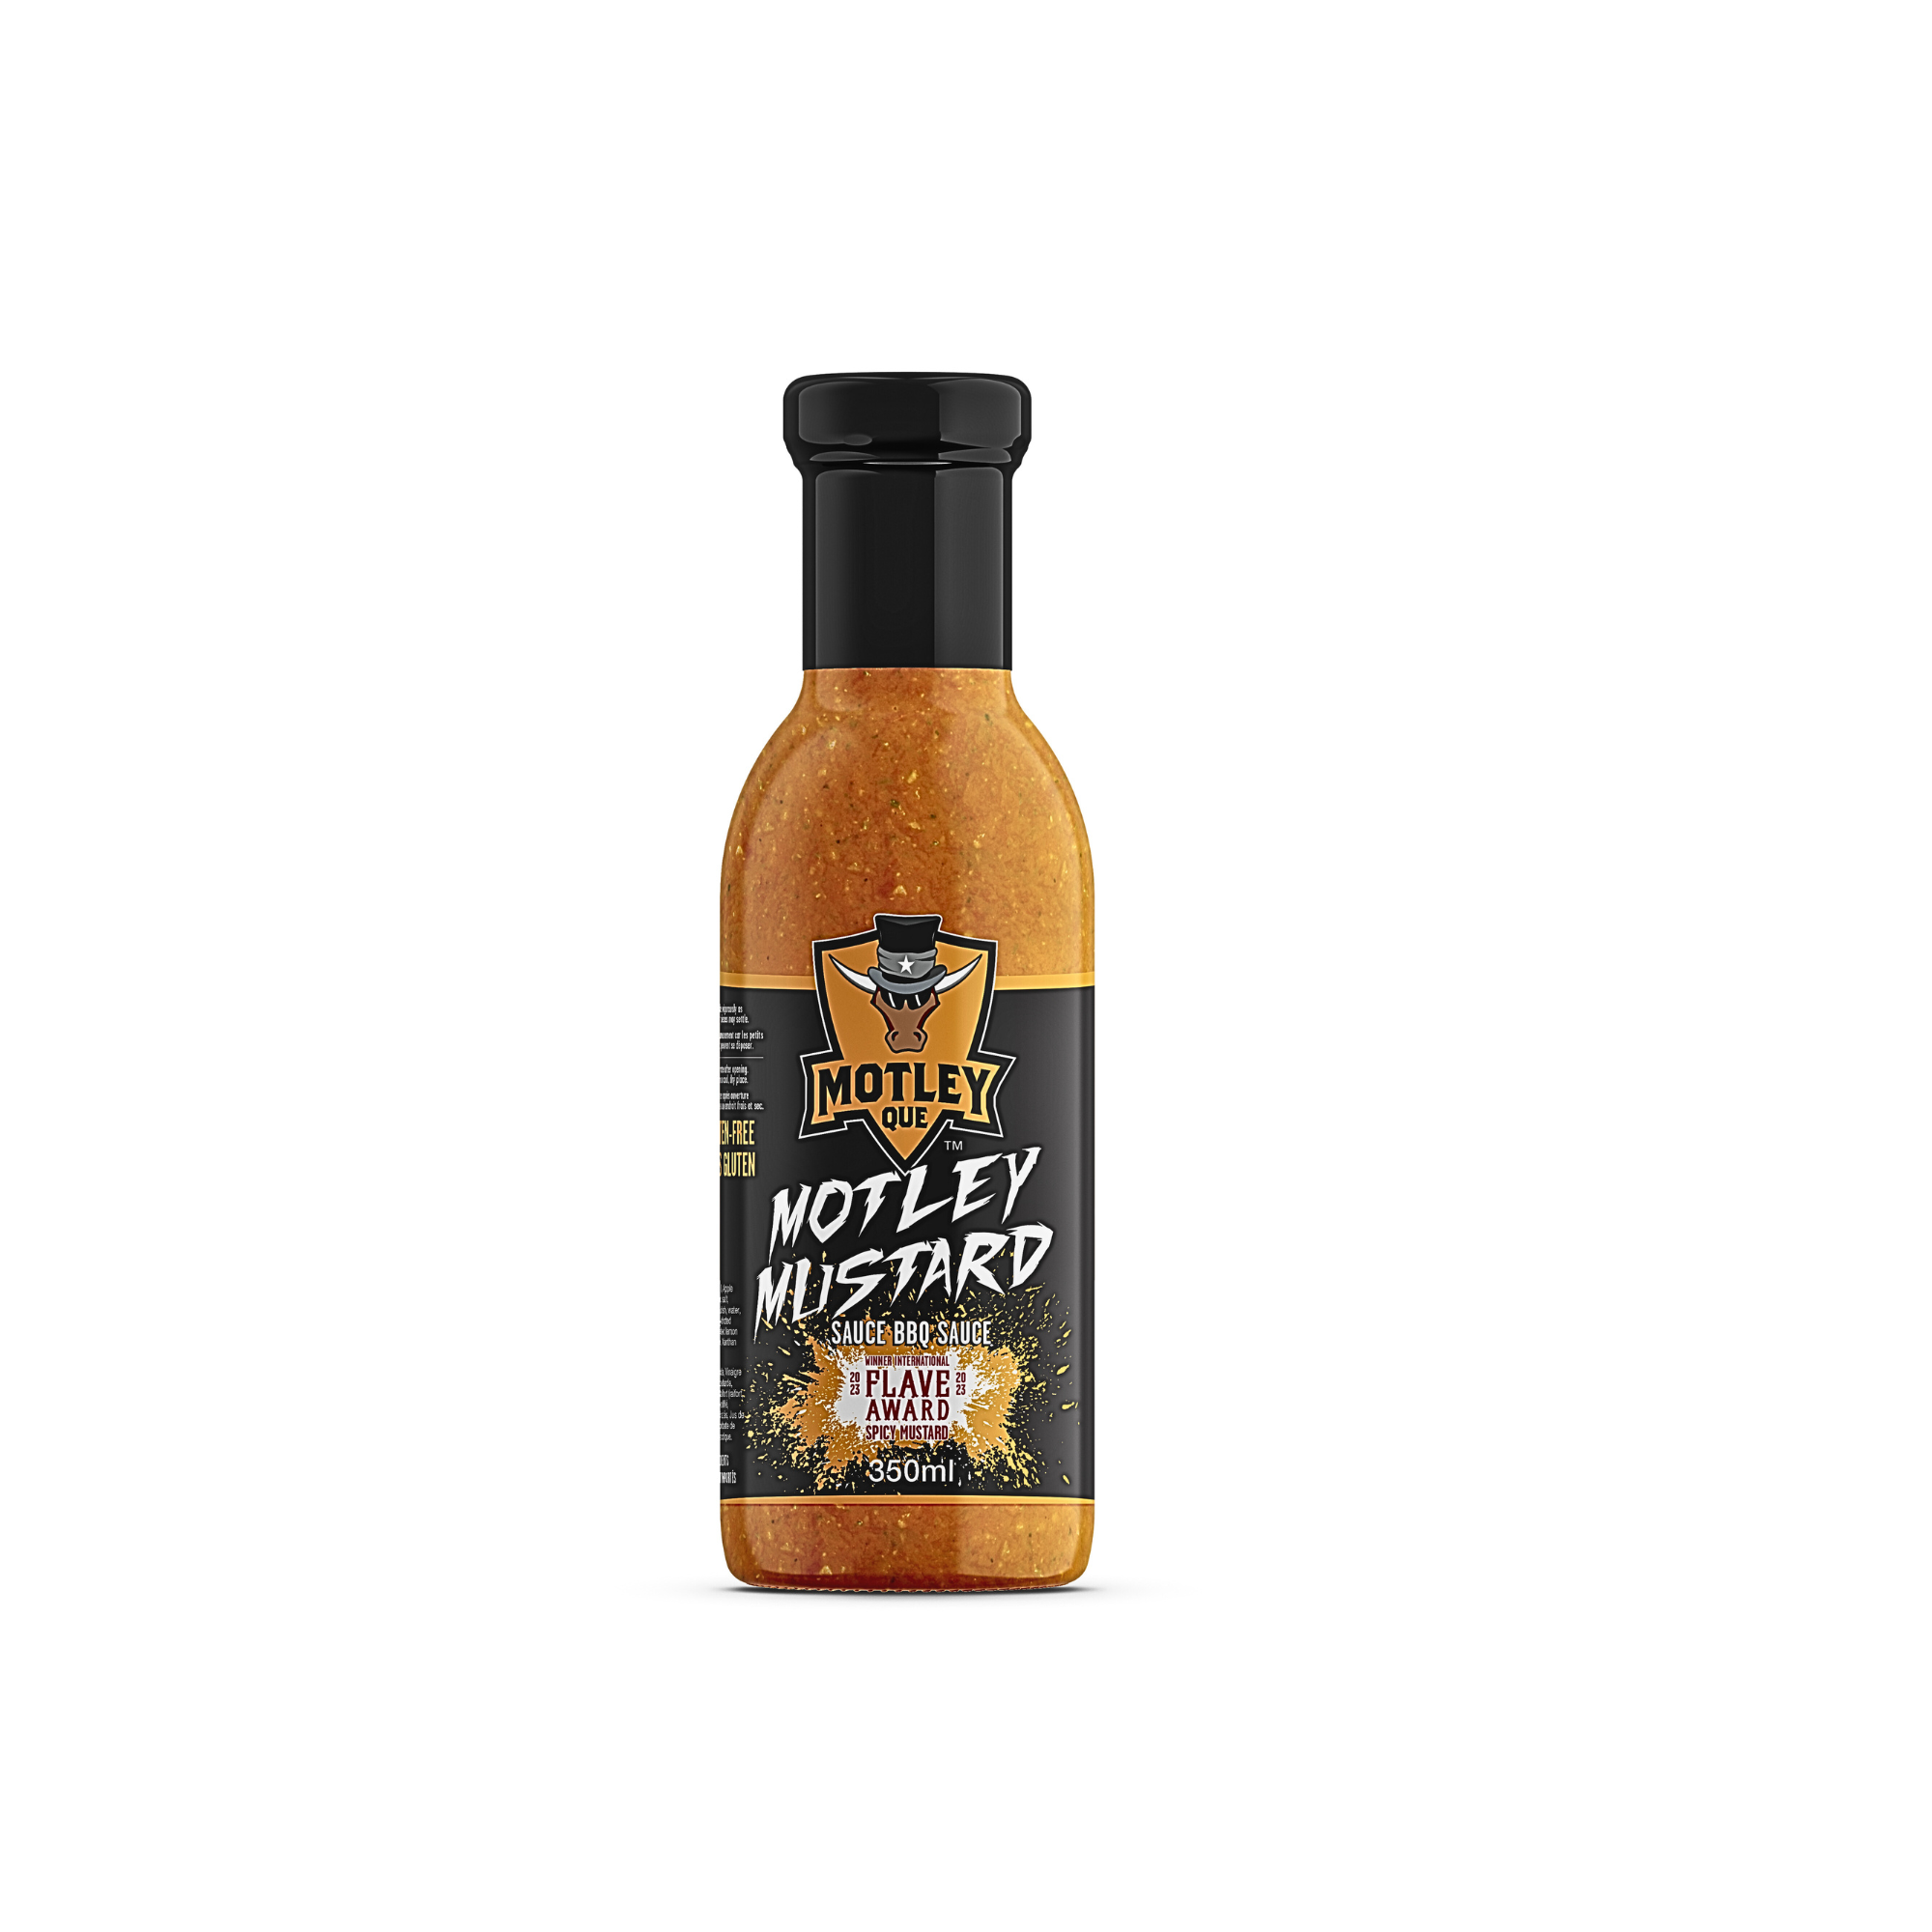 Motley Mustard